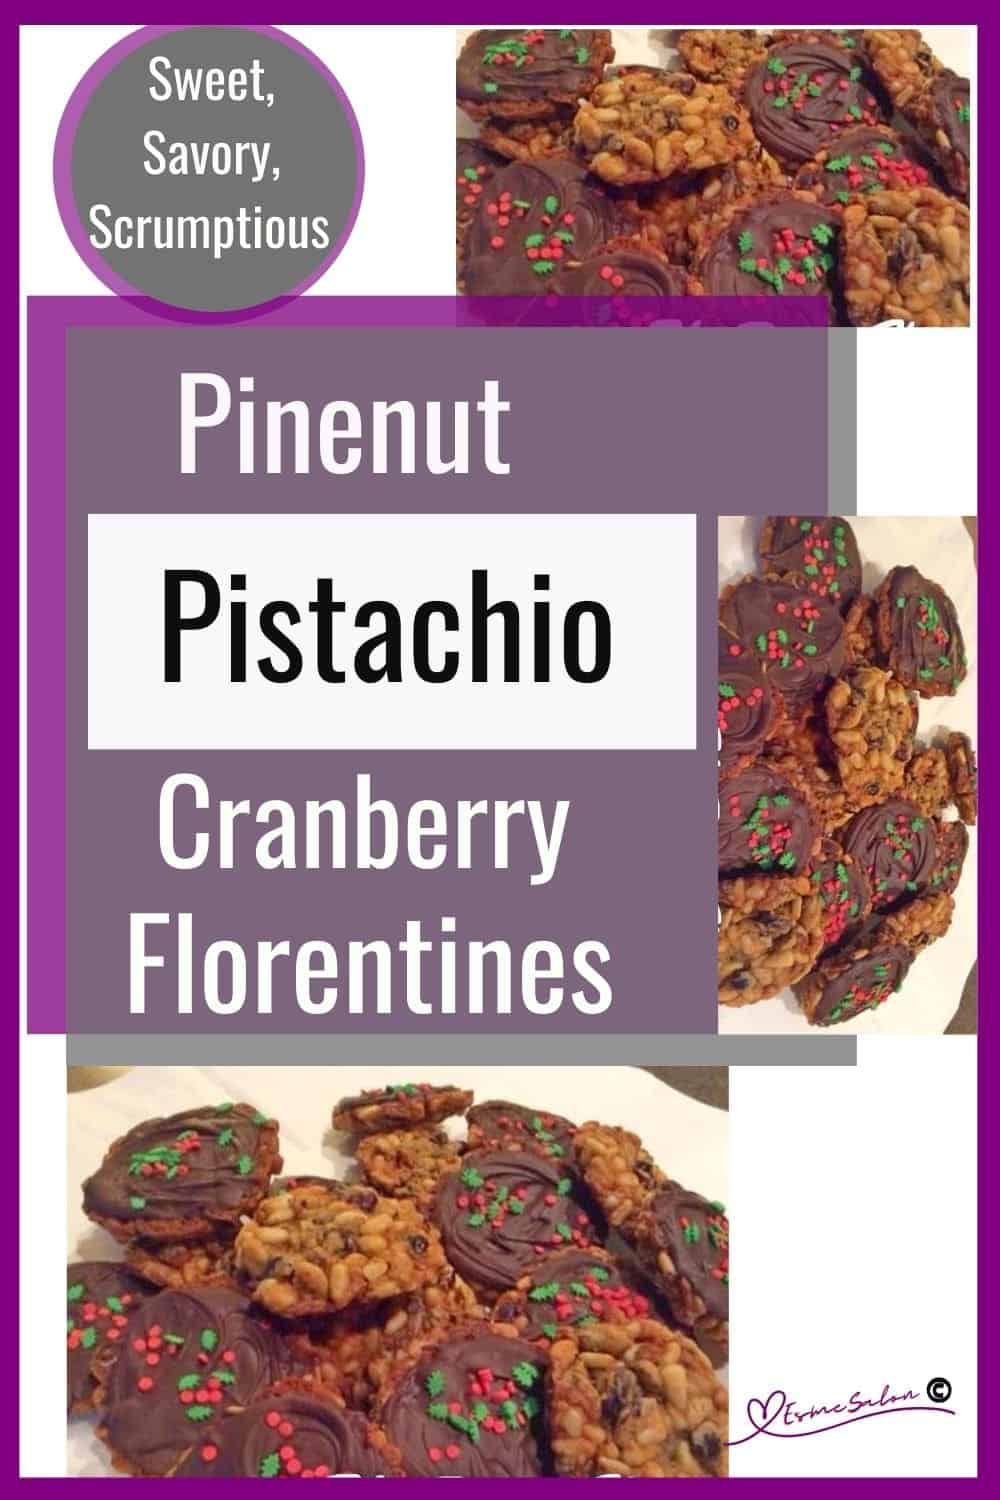 an image of crispy lacy Pine Nut Pistachio Cranberry Florentines